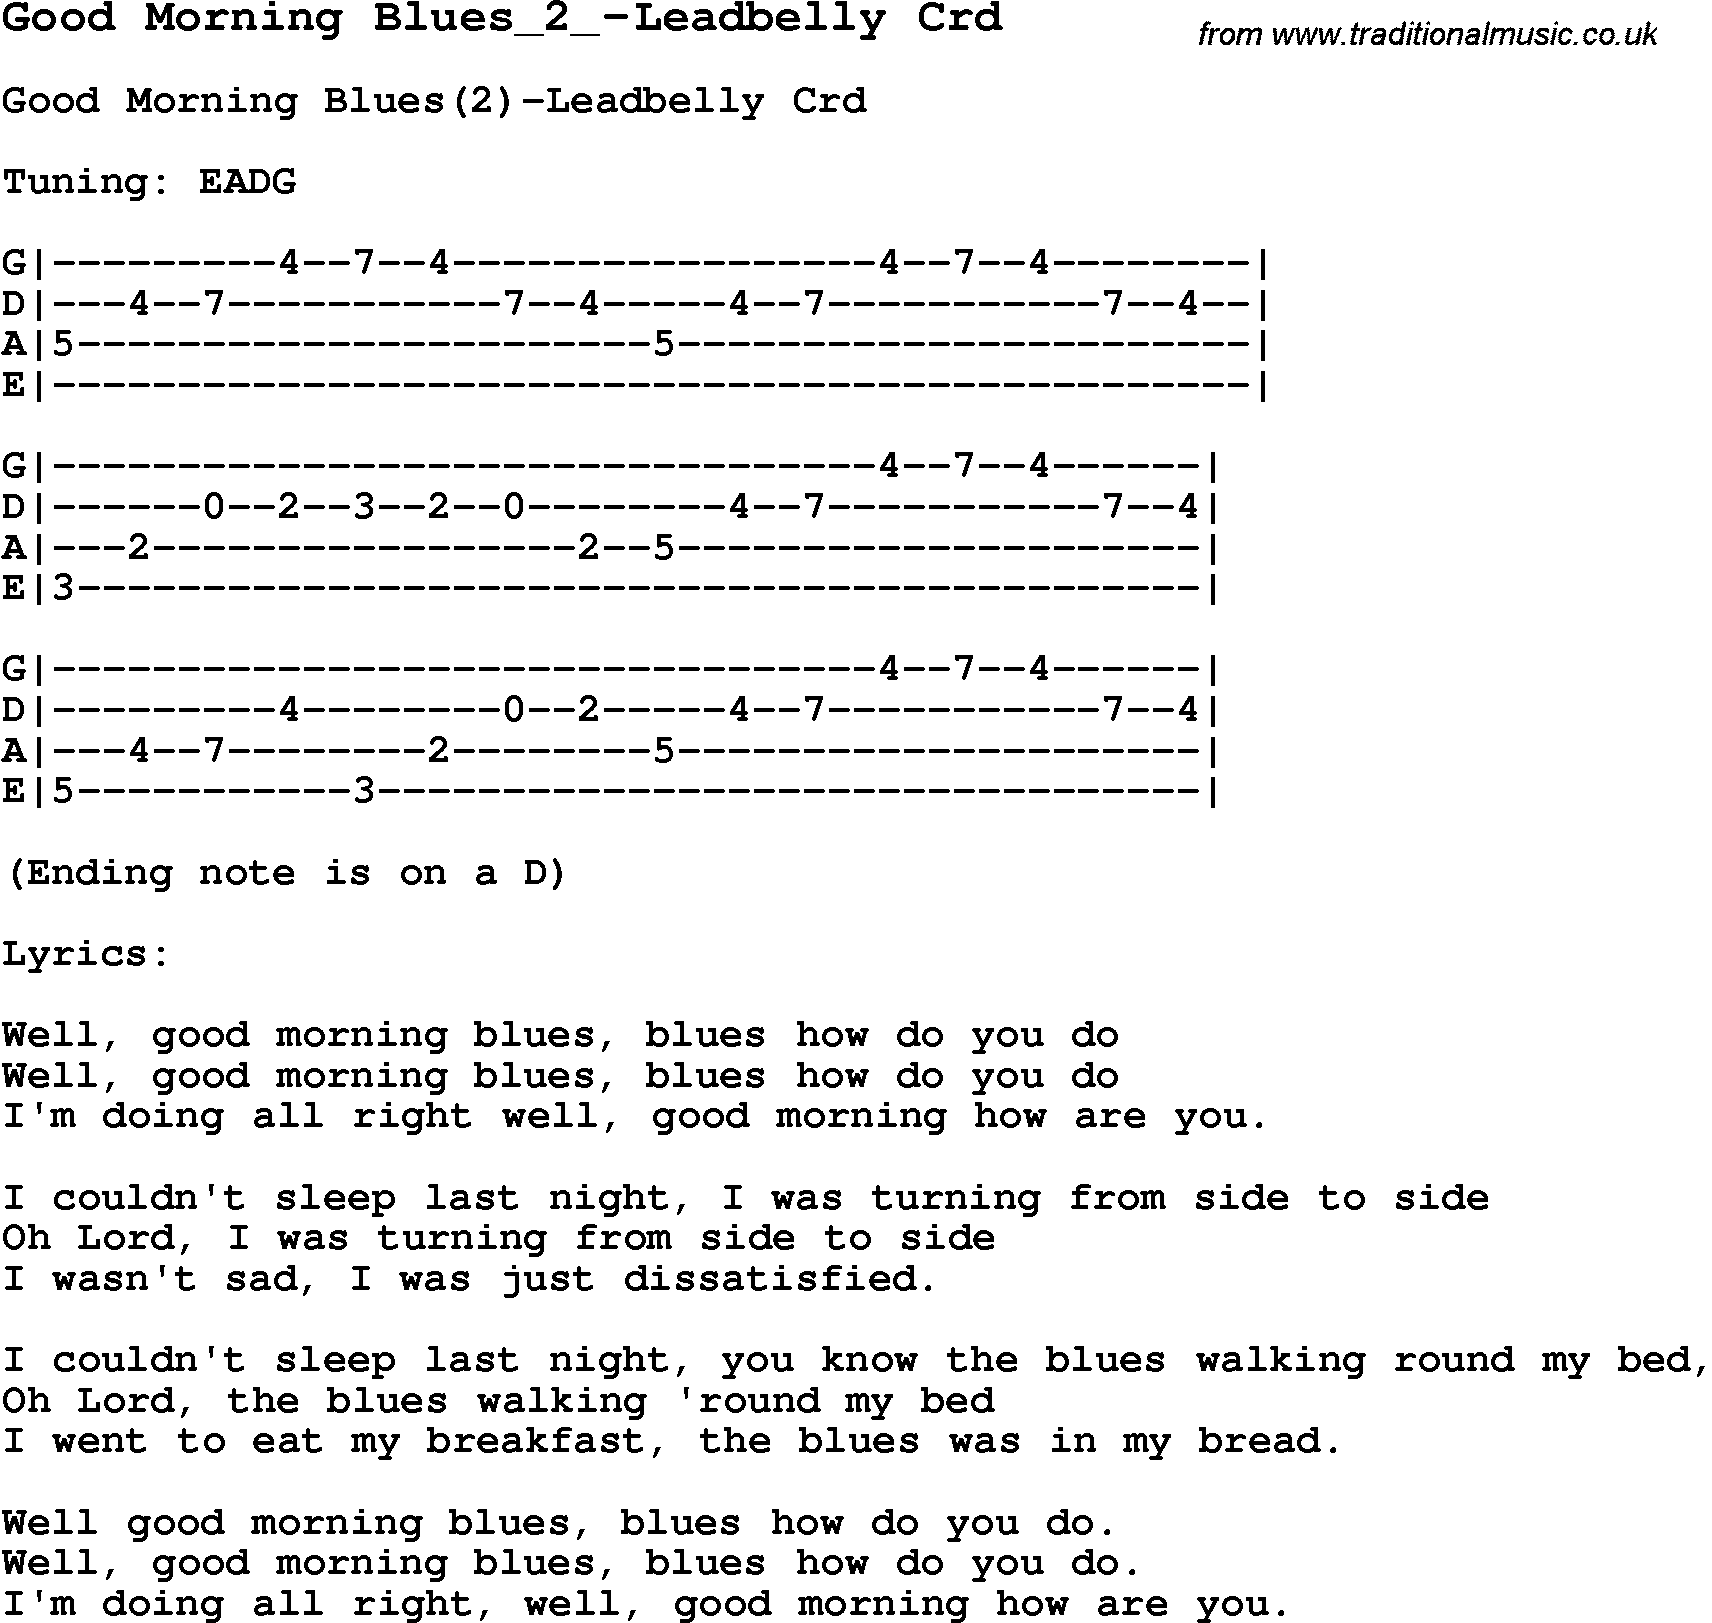 Skiffle Song Lyrics for Good Morning Blues 2-Leadbelly with chords for Mandolin, Ukulele, Guitar, Banjo etc.